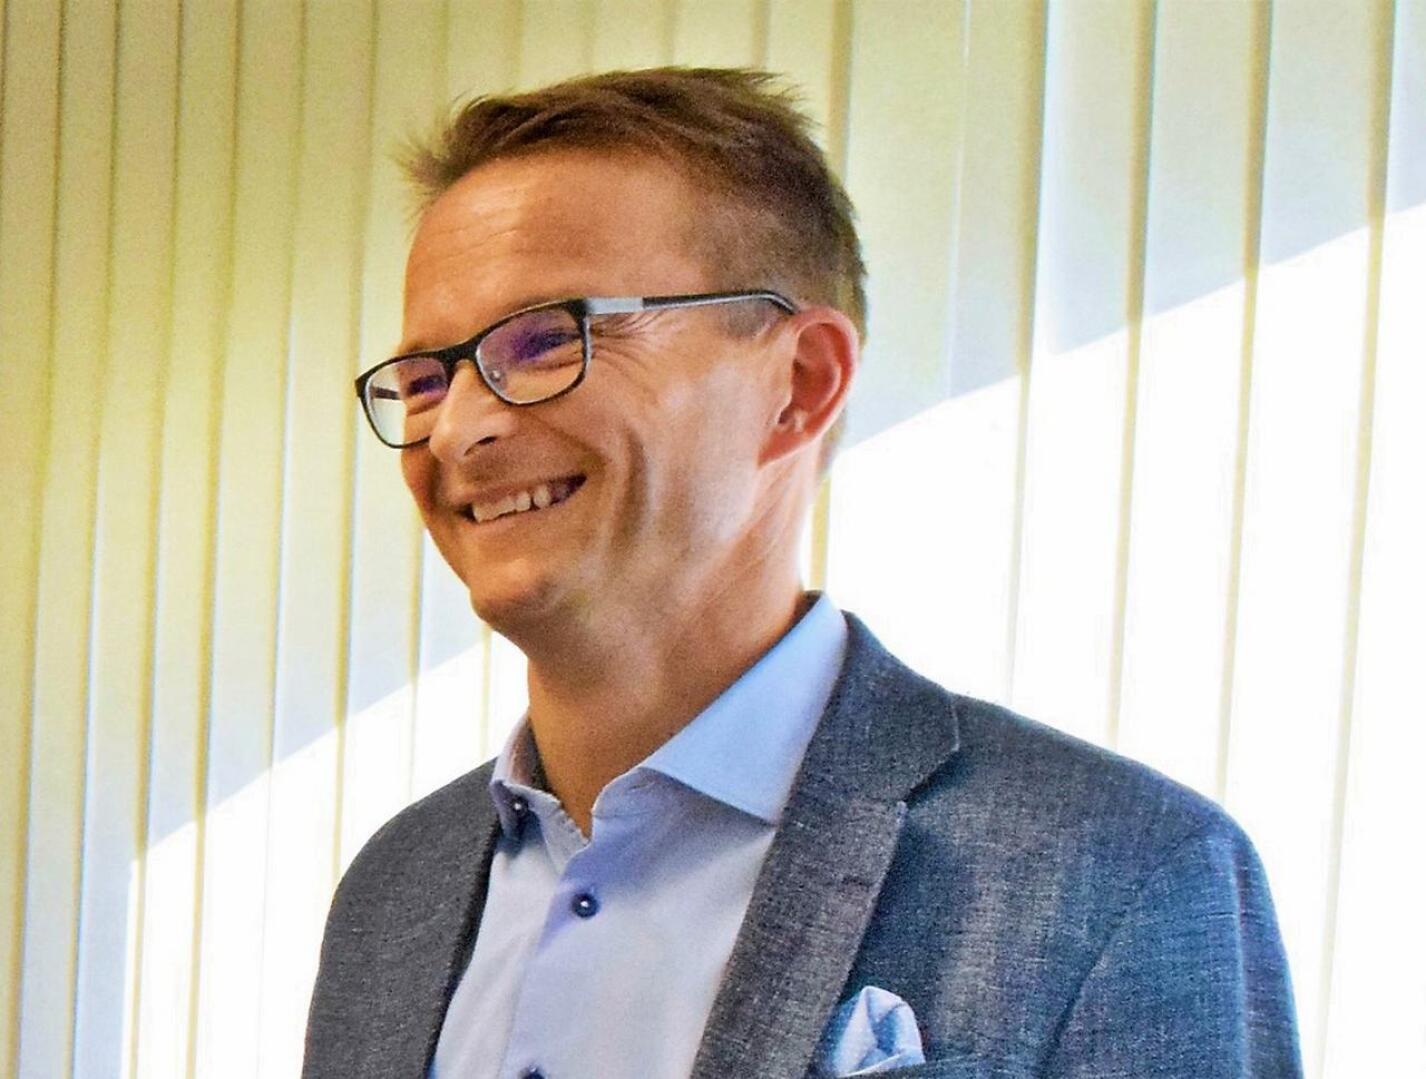 Norlicin toimitusjohtaja Cedric Frostdahl sanoo, että yritys sai viime keväänä useita yhteydenottoja kiinnostuneilta ostajilta.  - Pääsemme nyt mukaan rakentamaan Suomen suurinta tilitoimistoa tekemällä Rantalaisesta muun muassa toimialan suurimman ruotsinkielisen palveluntuottajan.